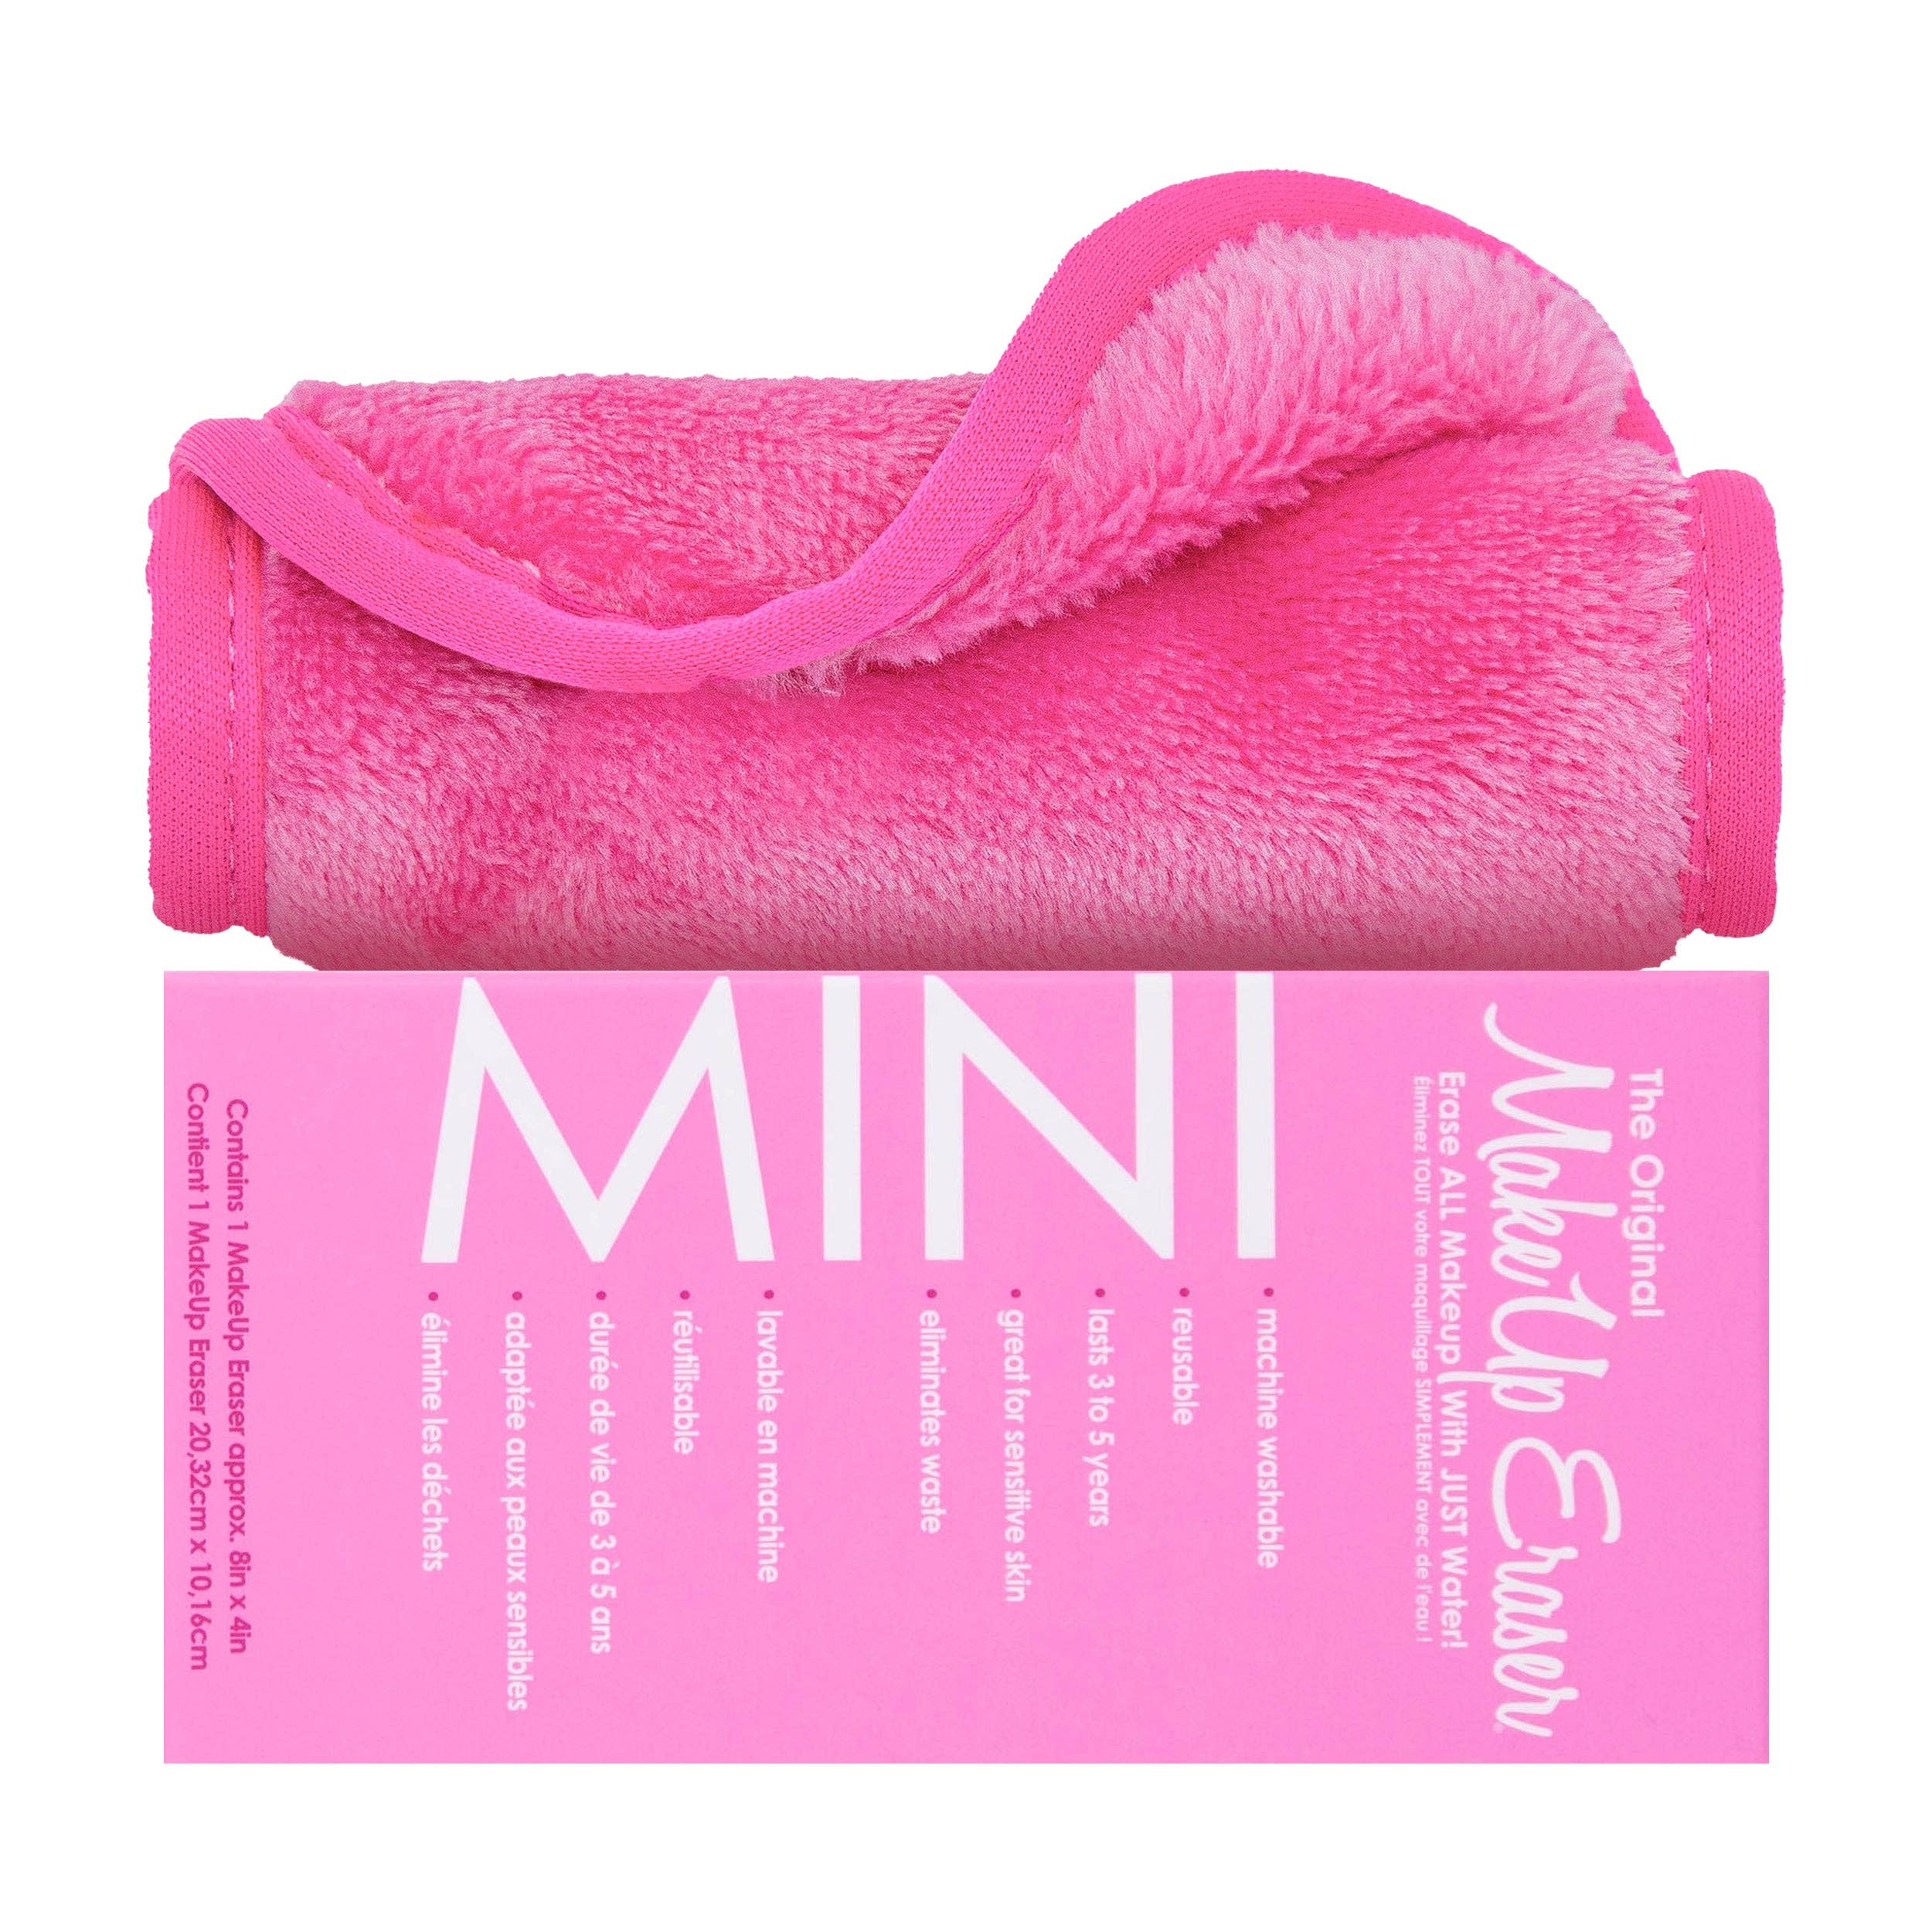 Mini Makeup Eraser Rose